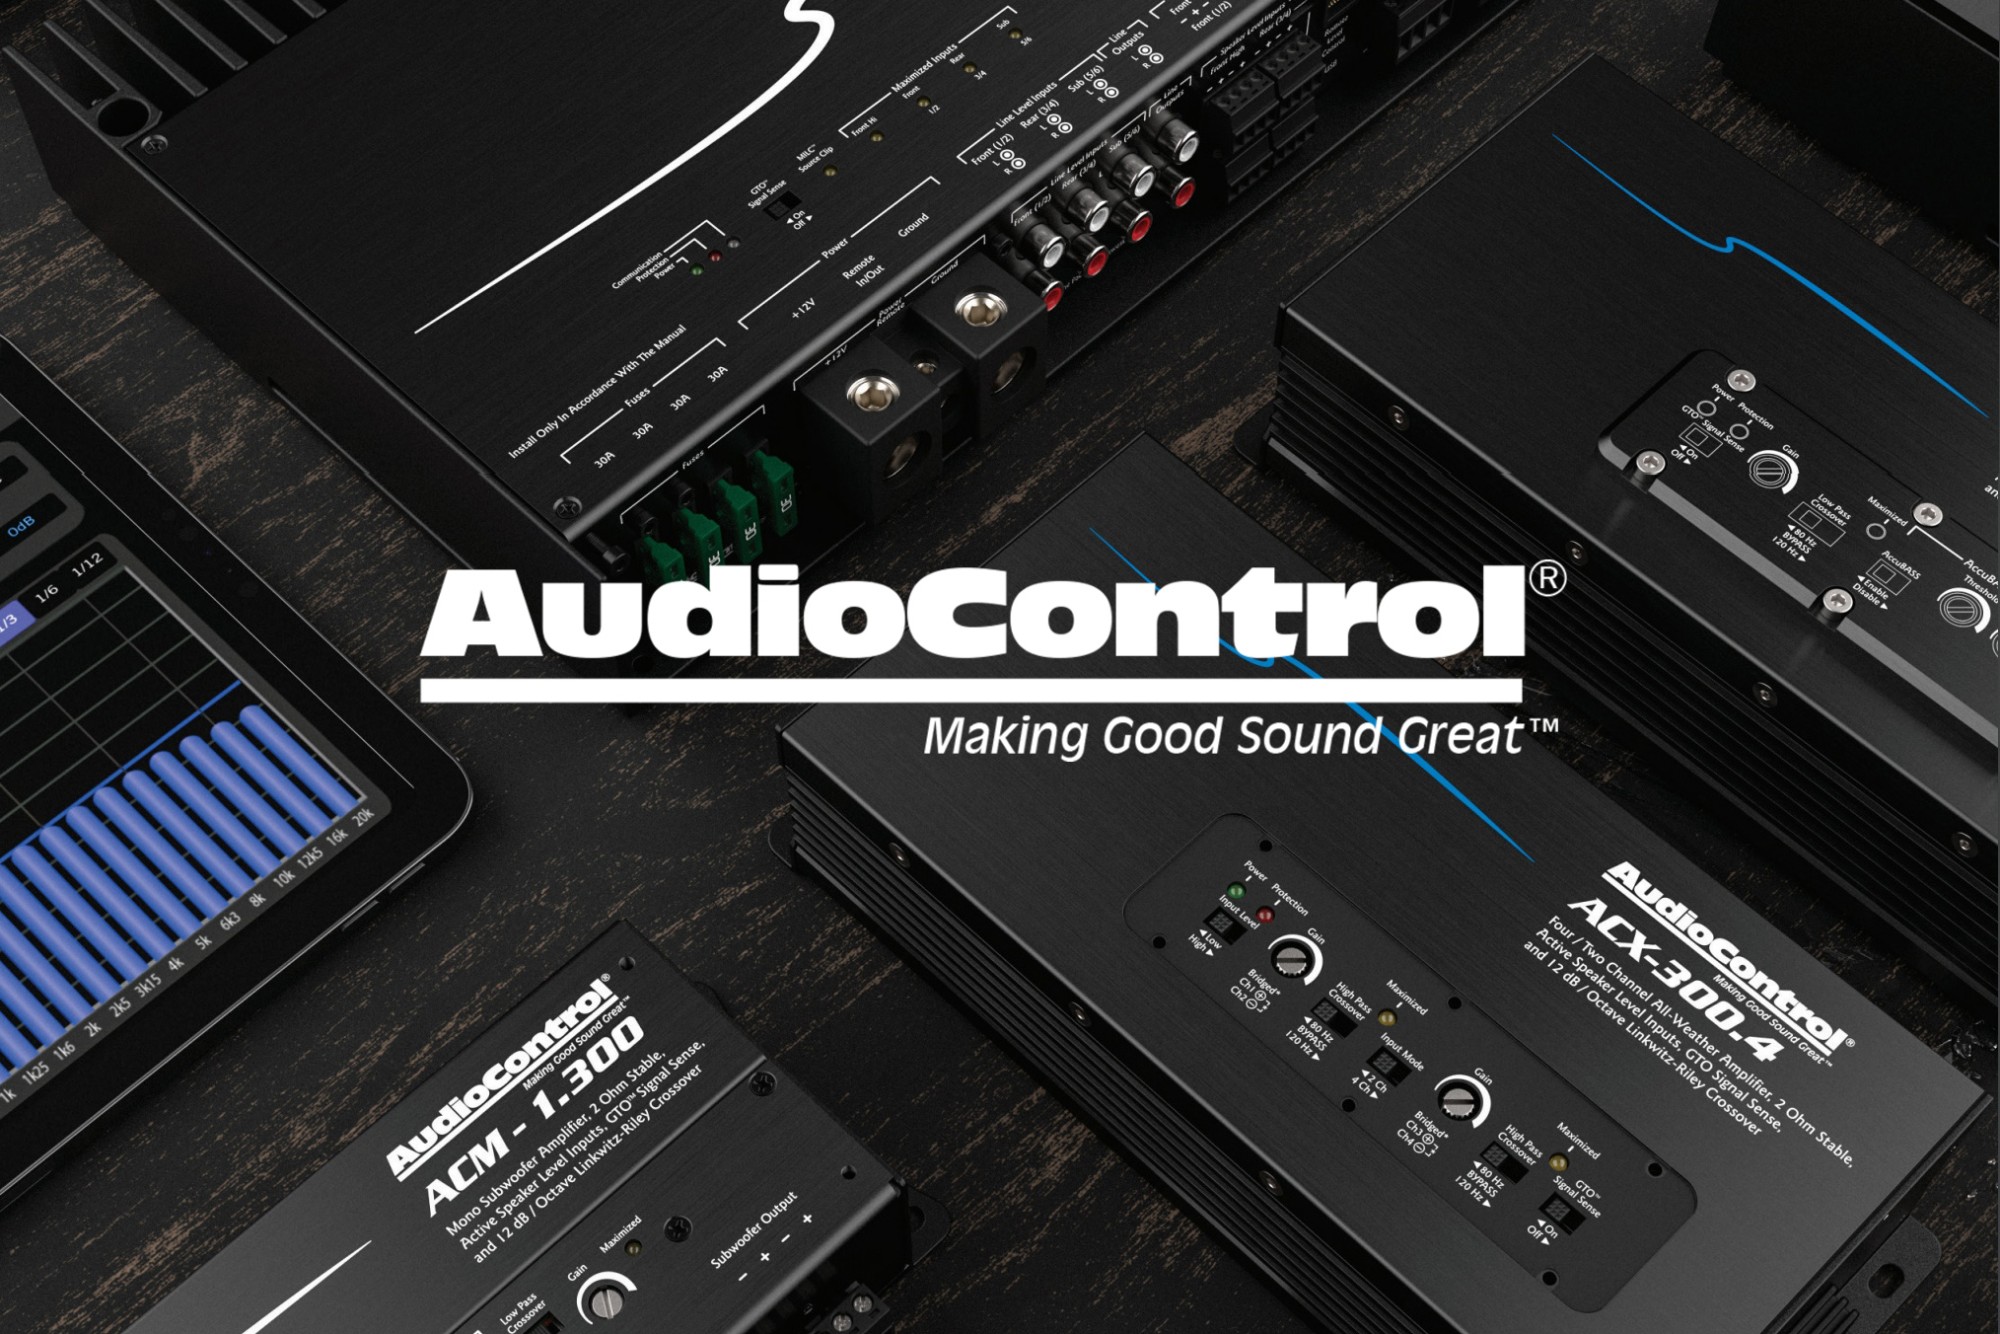 Představujeme produkty značky AudioControl